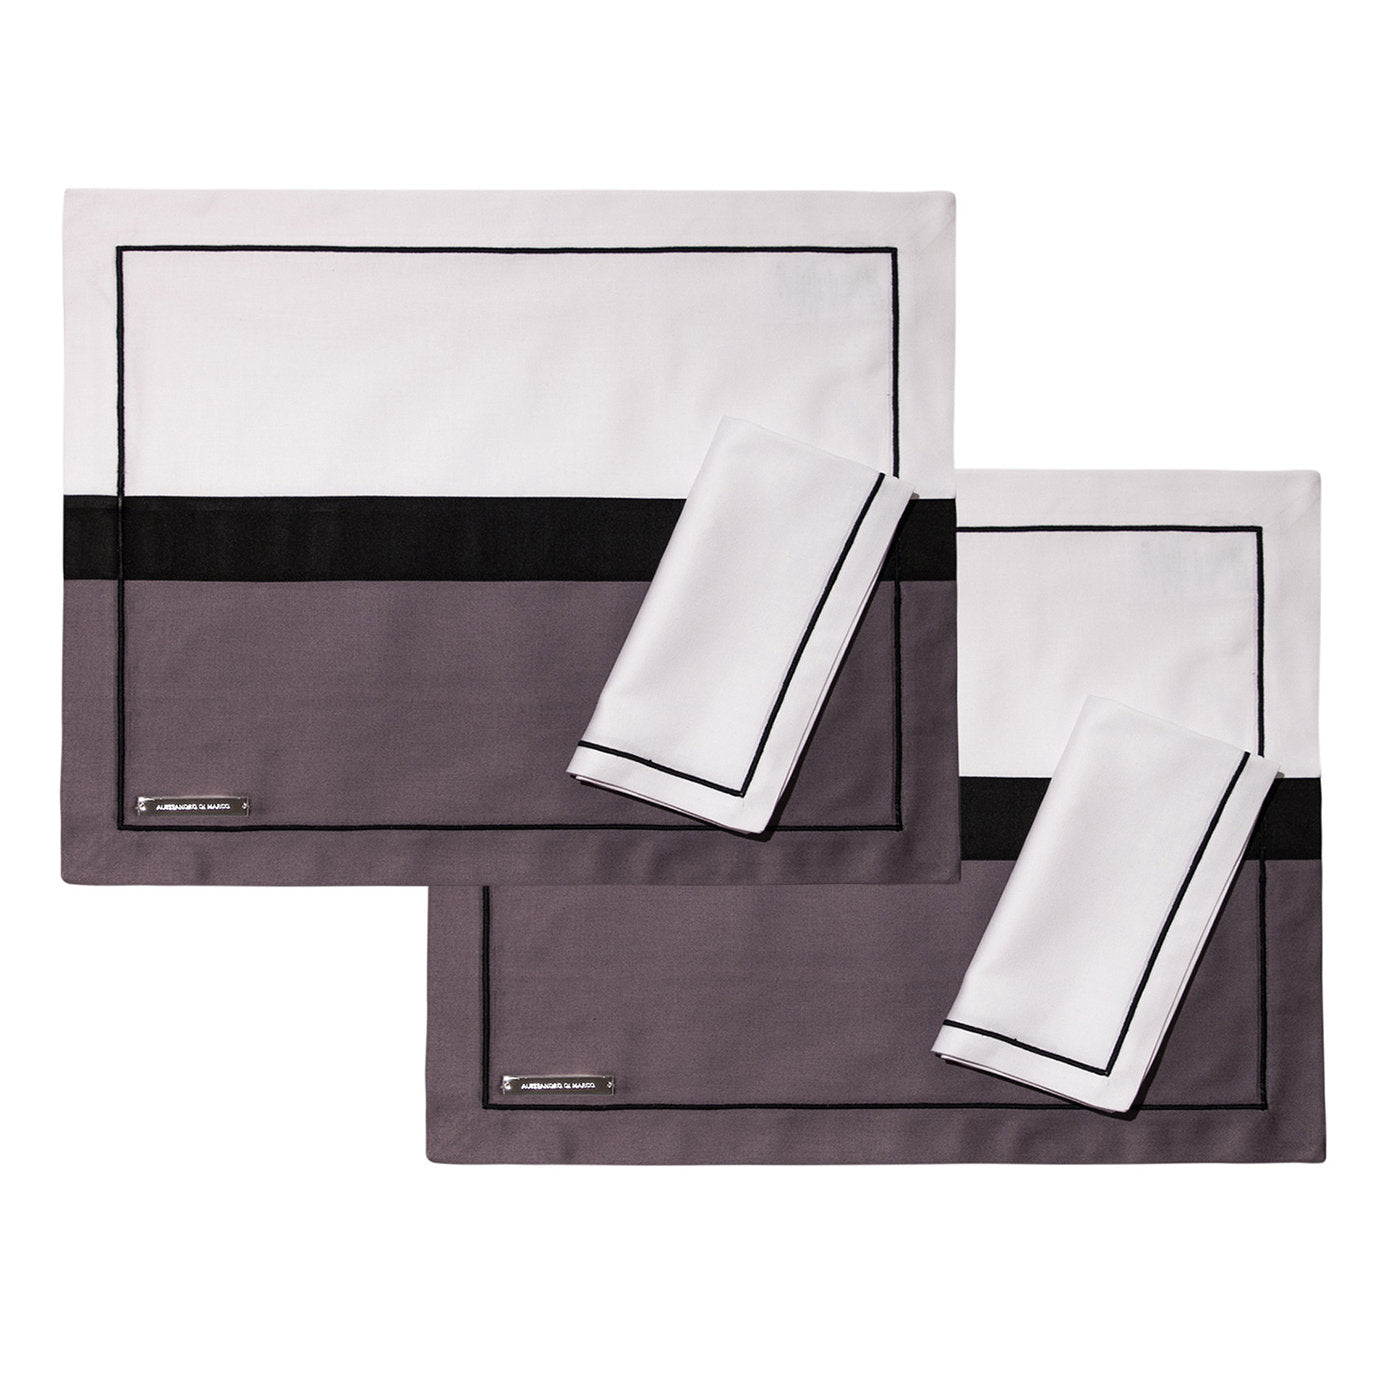 Tischsets und Servietten - Zweifarbig grau und weiß - Hauptansicht